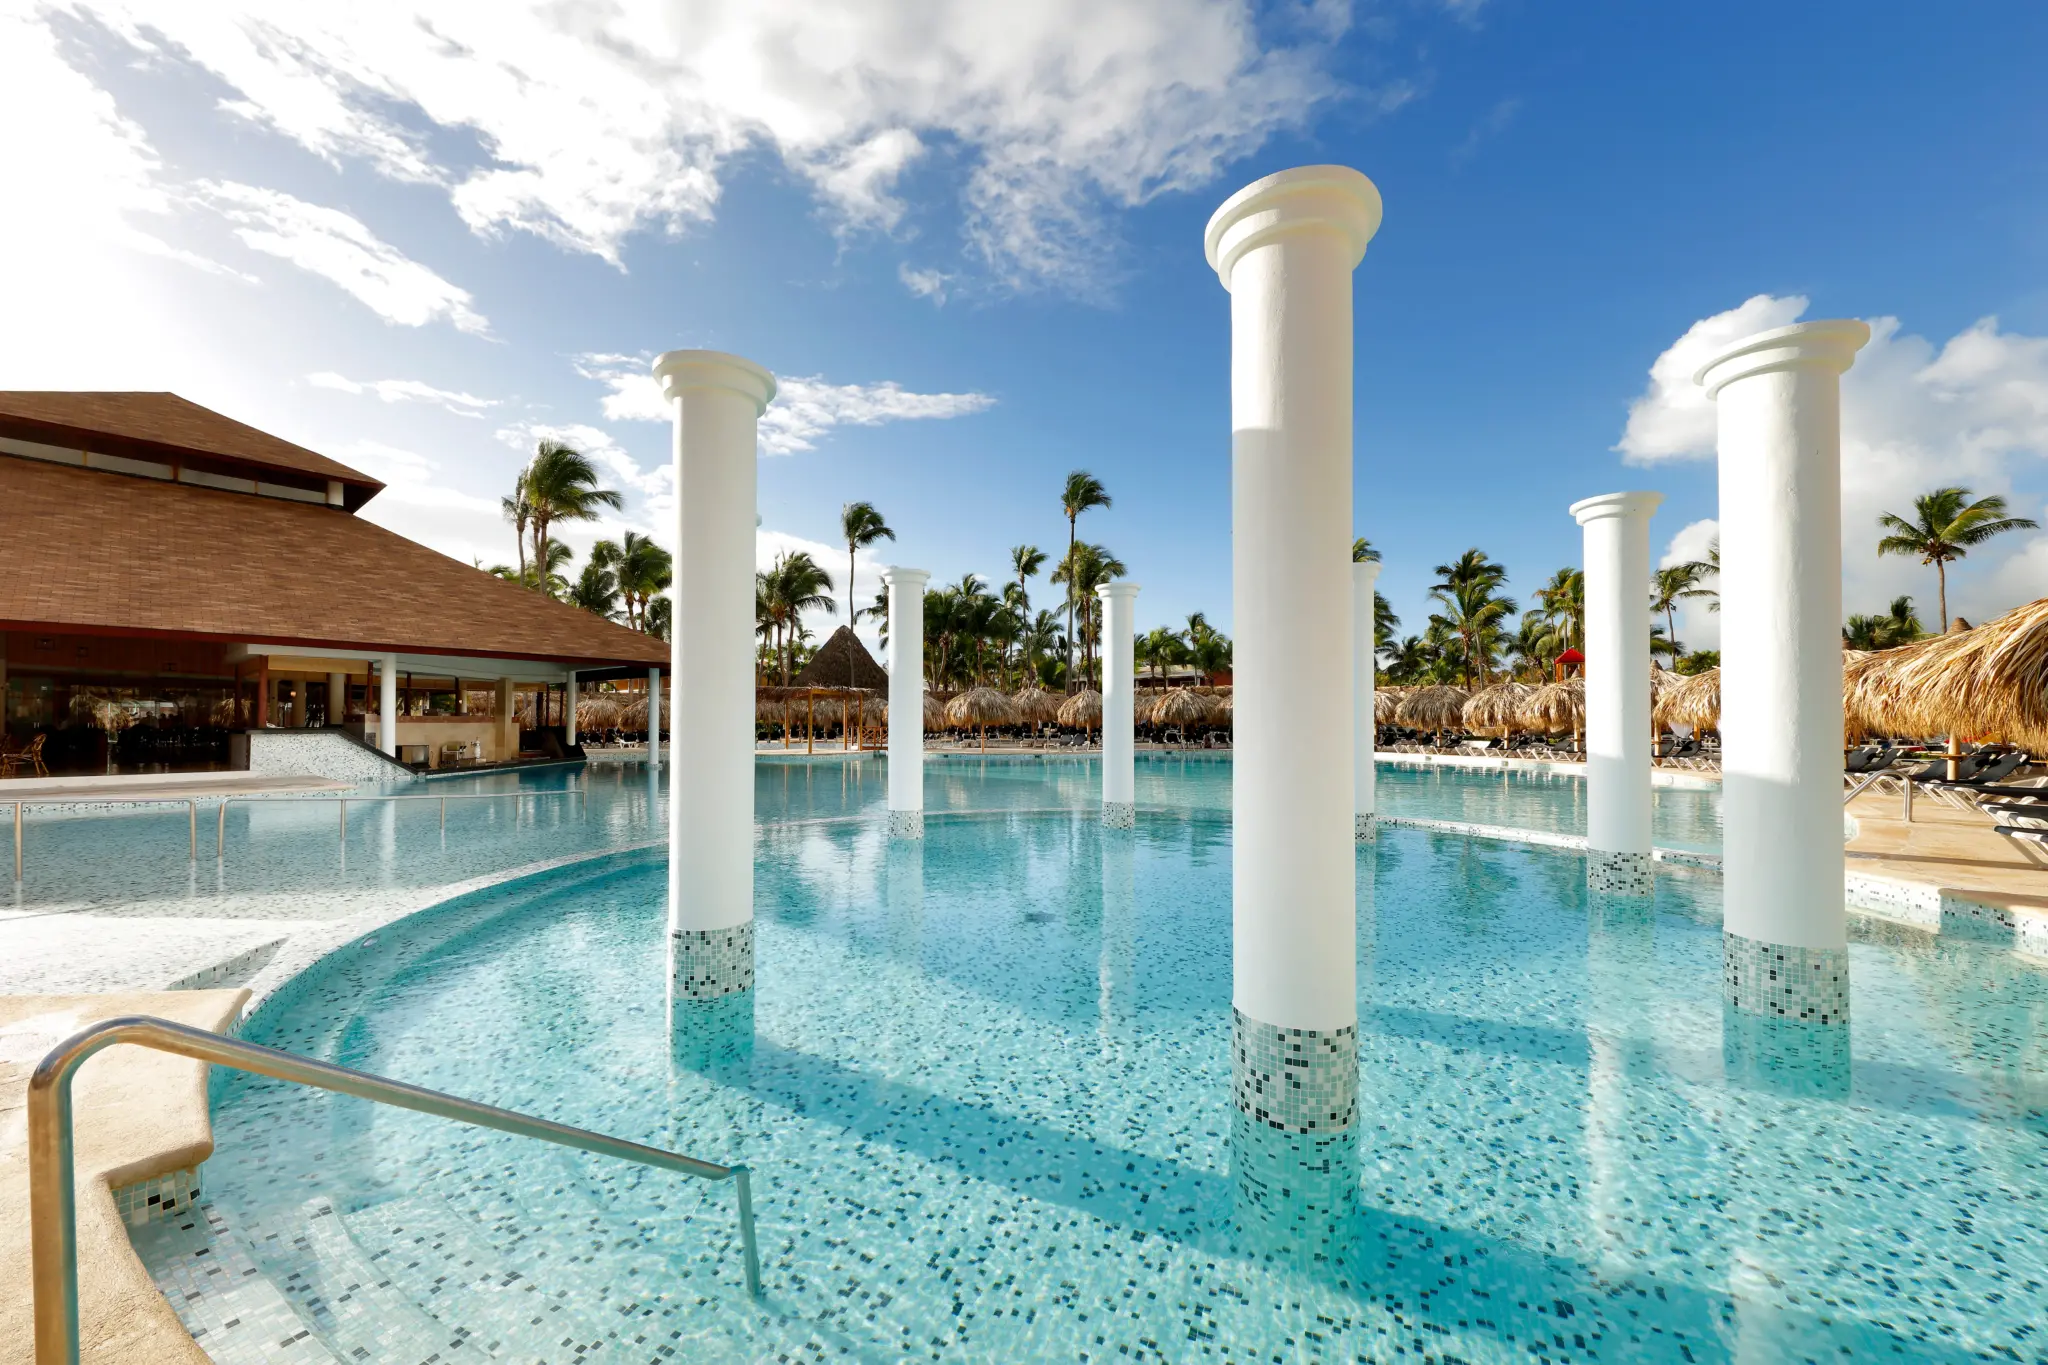 Grand Palladium Punta Cana Resort Spa and Casino